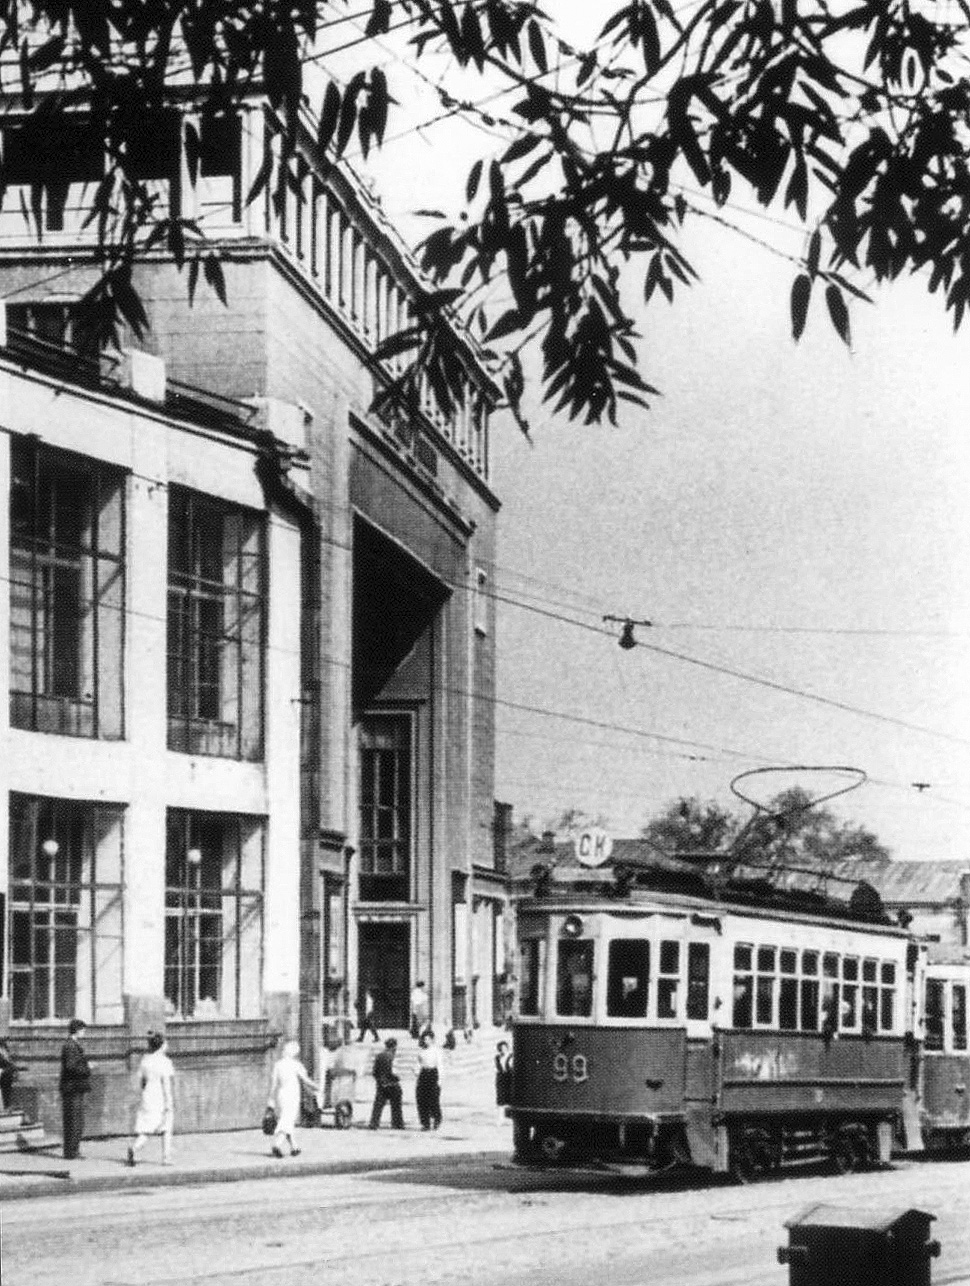 Moskau, BF Nr. 99; Moskau — Historical photos — Tramway and Trolleybus (1946-1991)